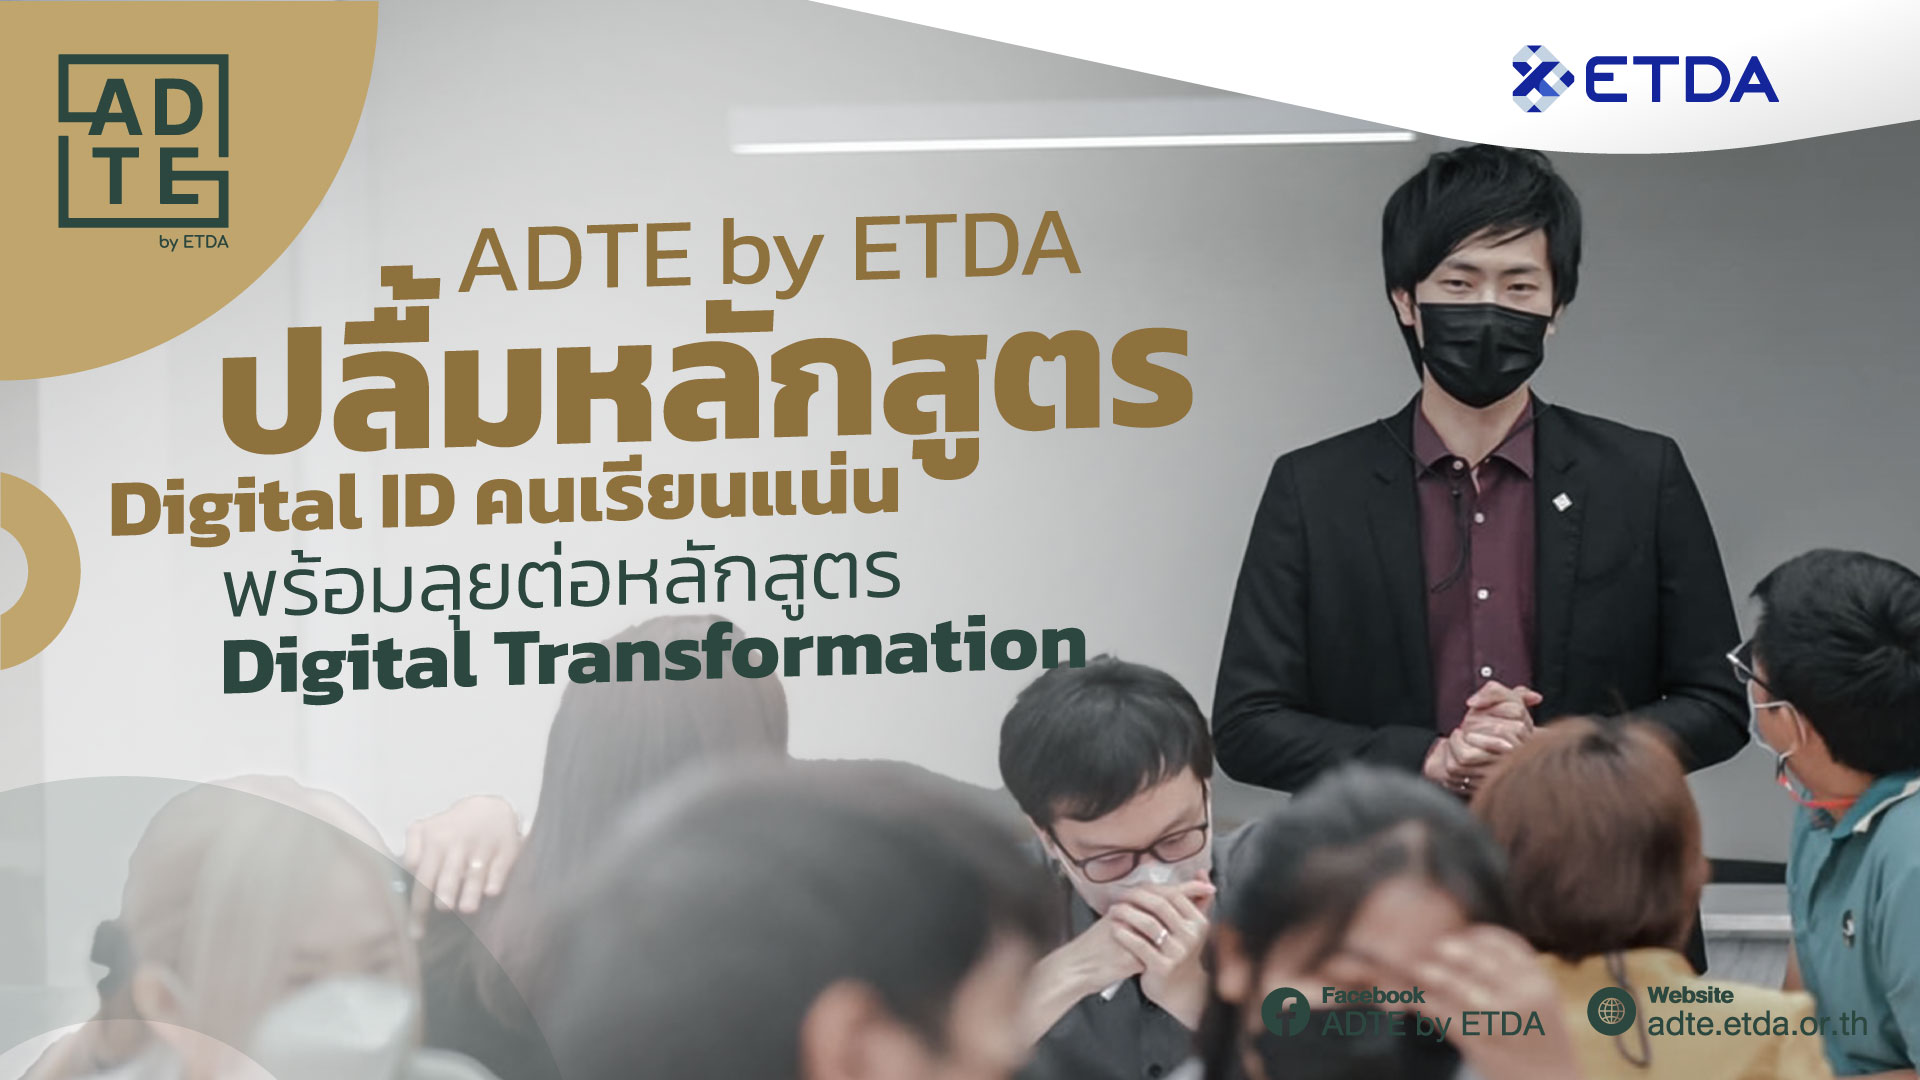 ADTE by ETDA ปลื้มหลักสูตร Digital ID คนเรียนแน่น พร้อมลุยต่อหลักสูตร Digital Transformation